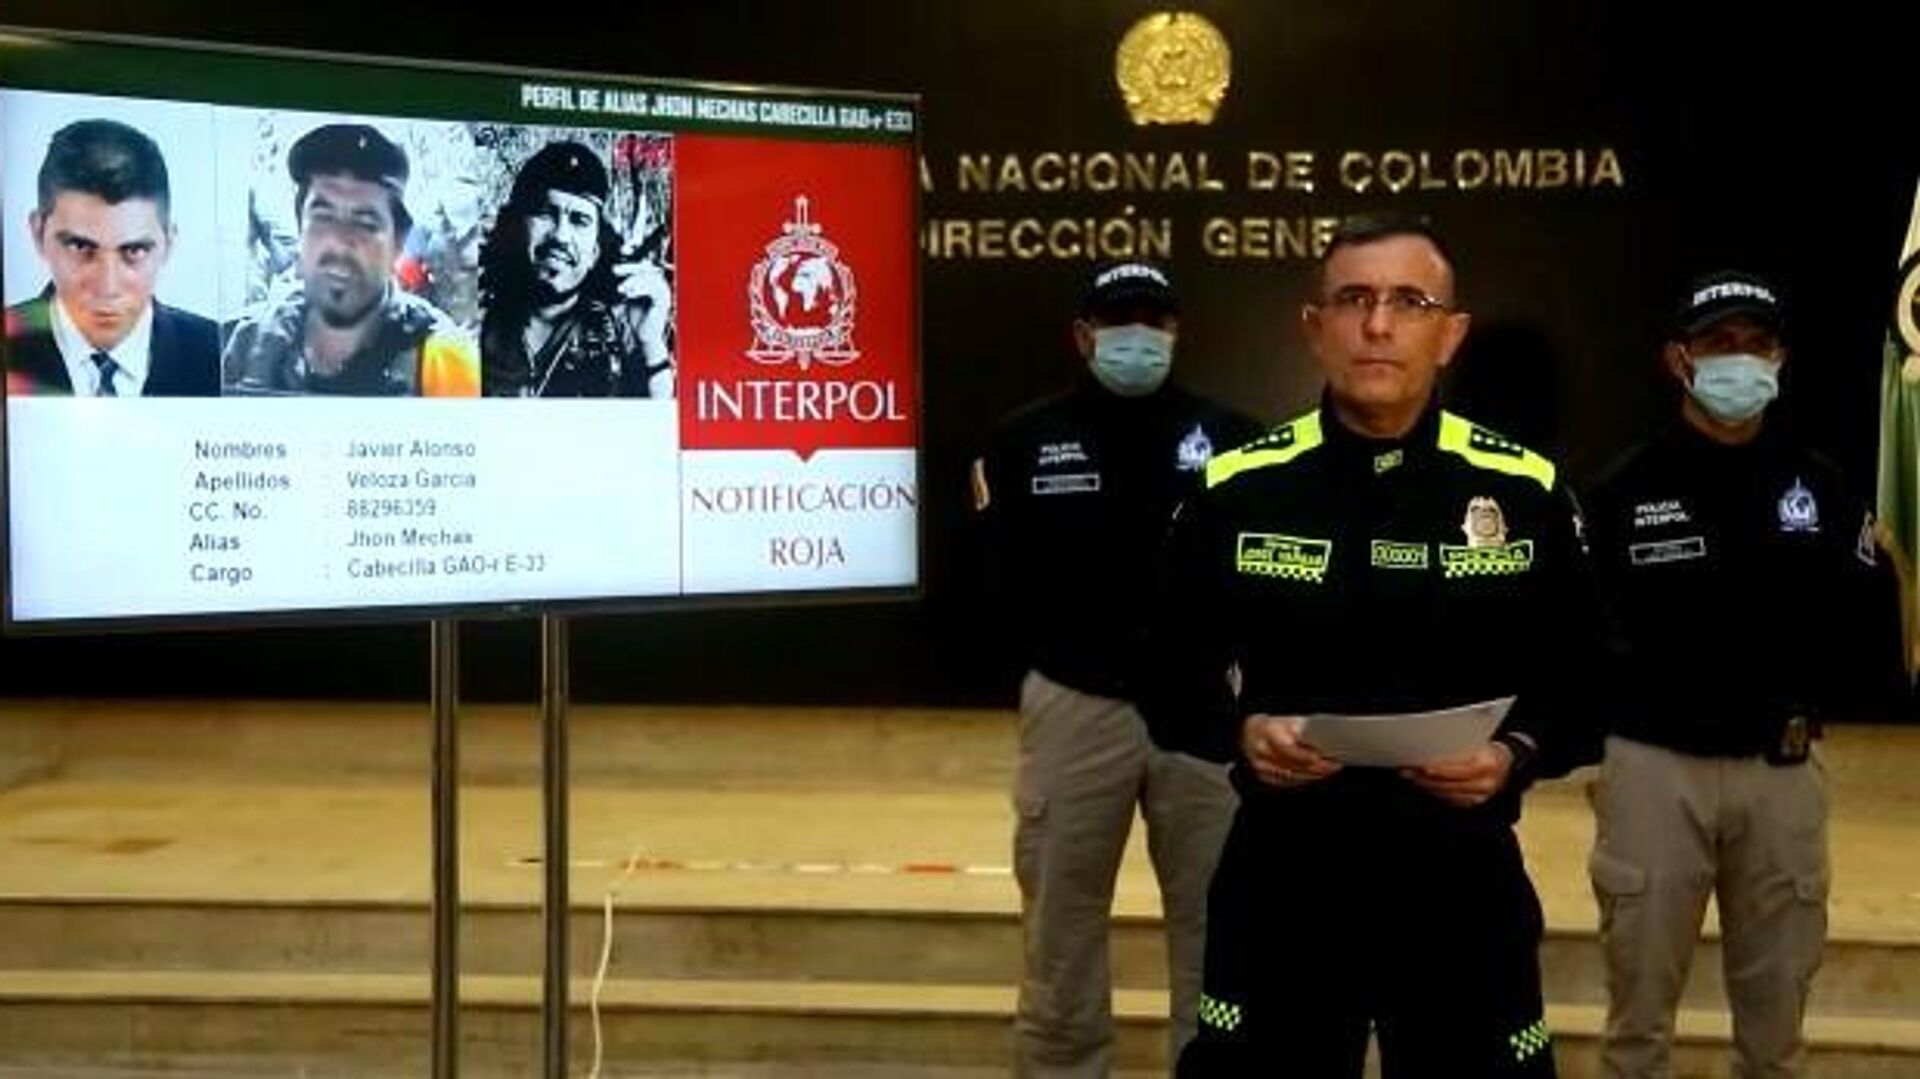 Policía de Colombia expide circular roja de Interpol contra líder de exFARC 'Jhon Mechas', el 1 de agosto del 2021 - Sputnik Mundo, 1920, 01.08.2021